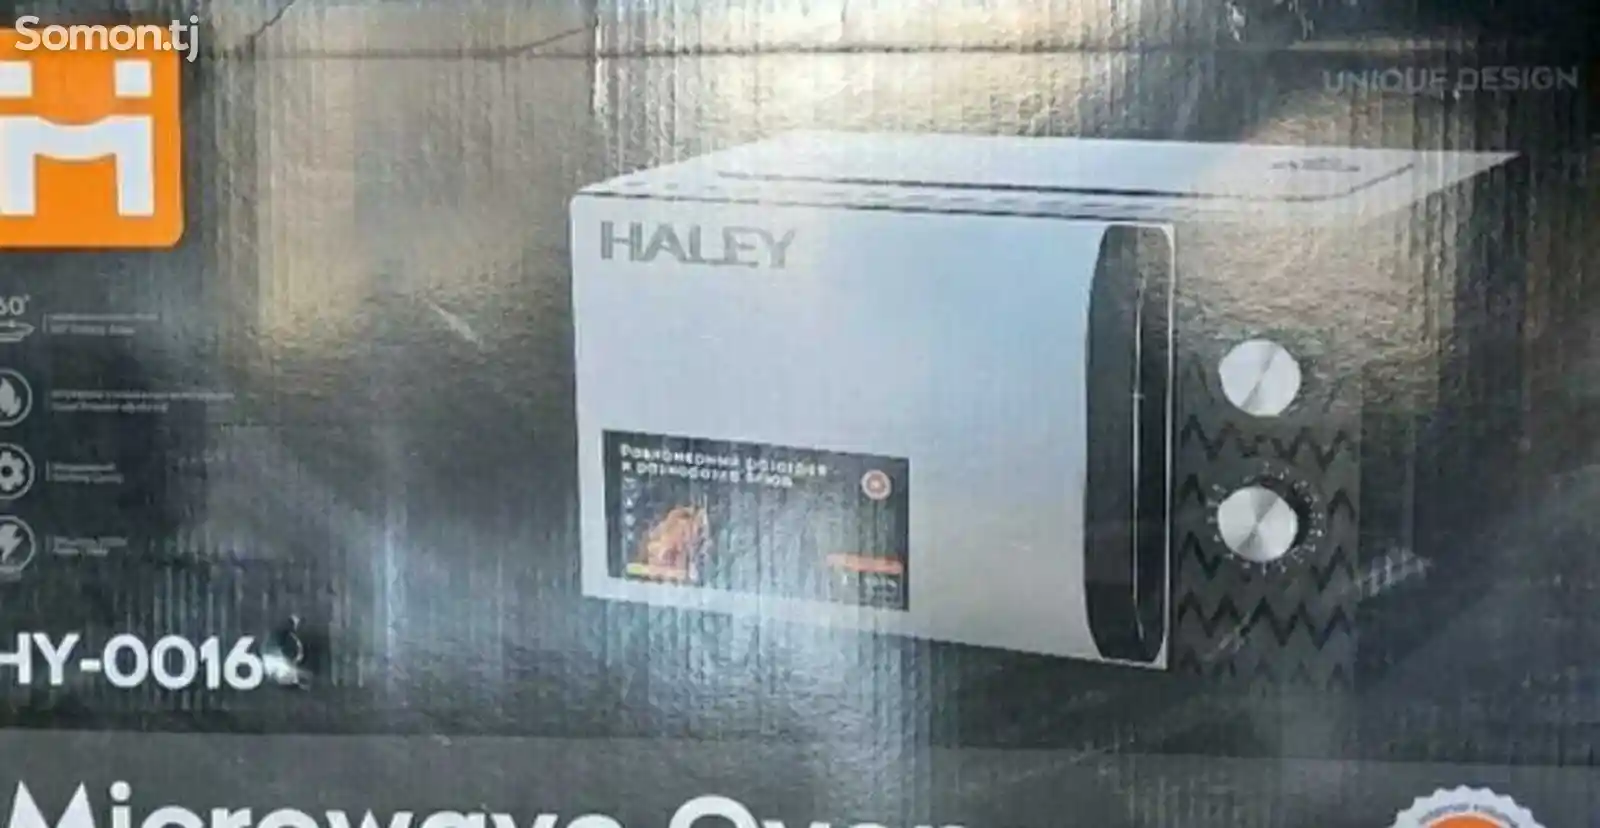 Микроволновая печь Haley-0016